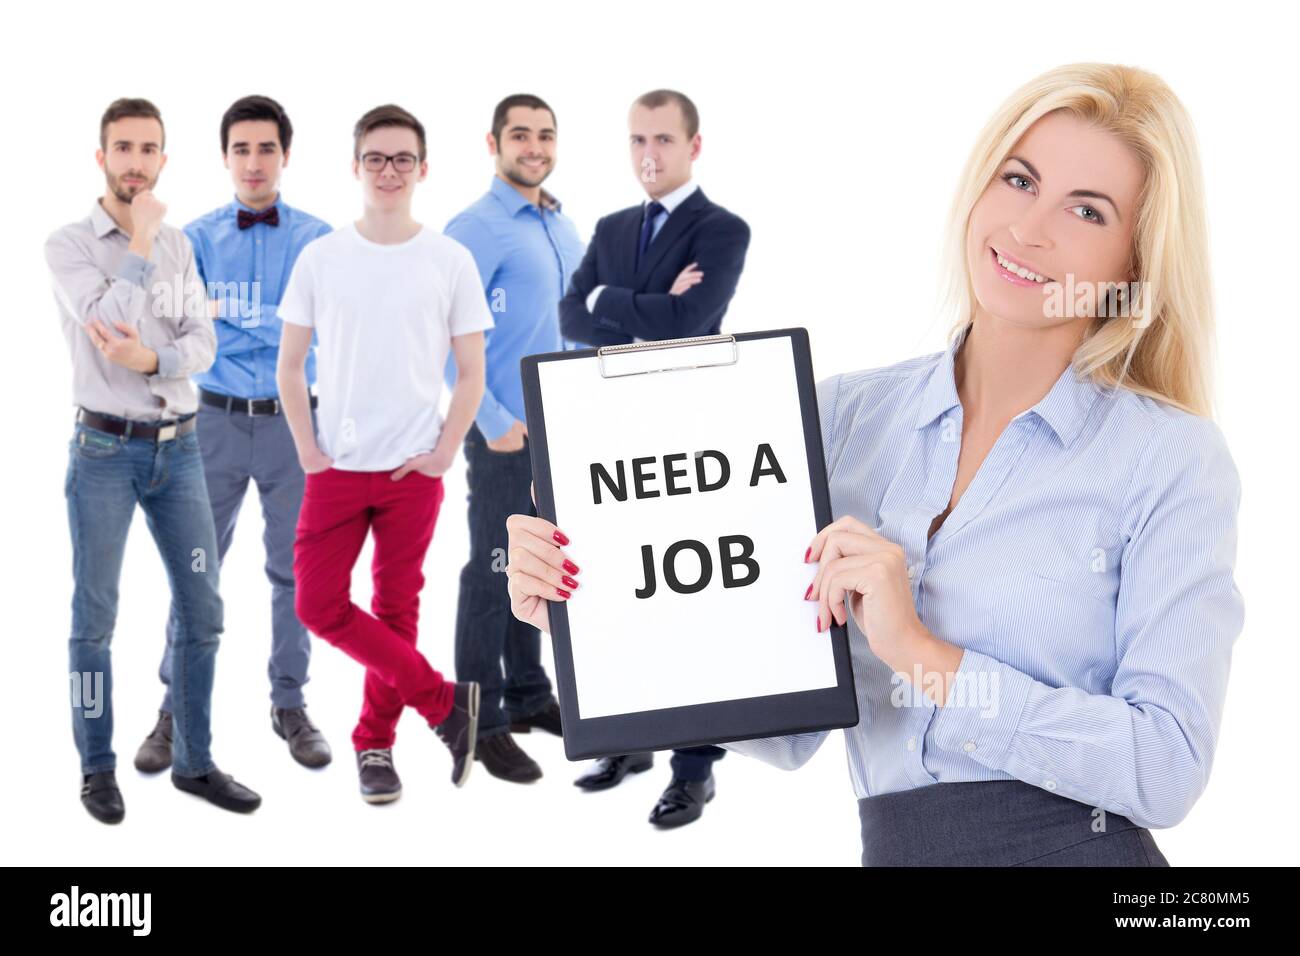 concetto di ricerca di lavoro - uomini d'affari e donna che tengono appunti con il testo 'bisogno di un lavoro' isolato su sfondo bianco Foto Stock